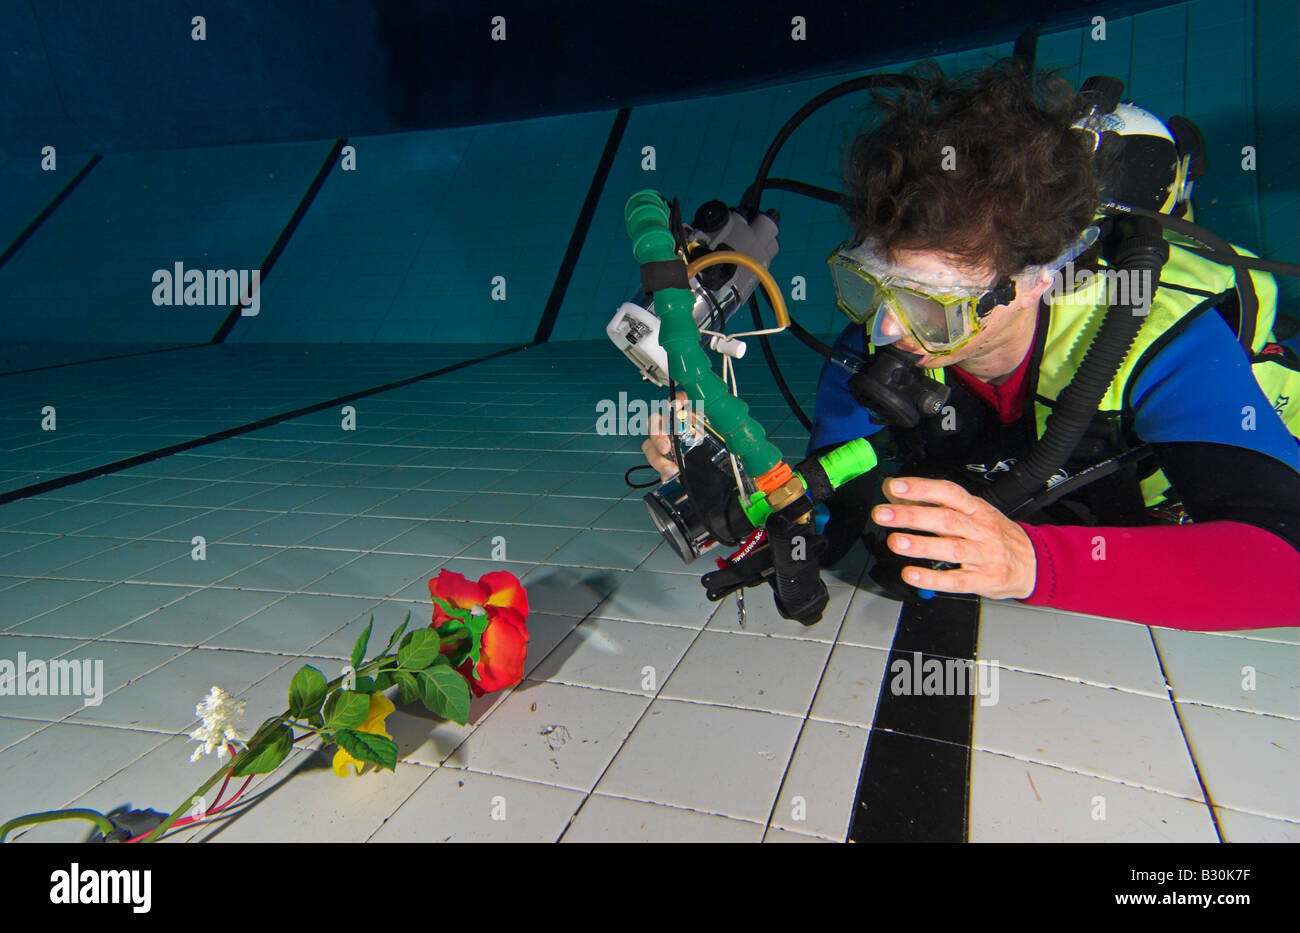 Mujer Scuba Diver prácticas fotografía submarina en piscina Foto de stock